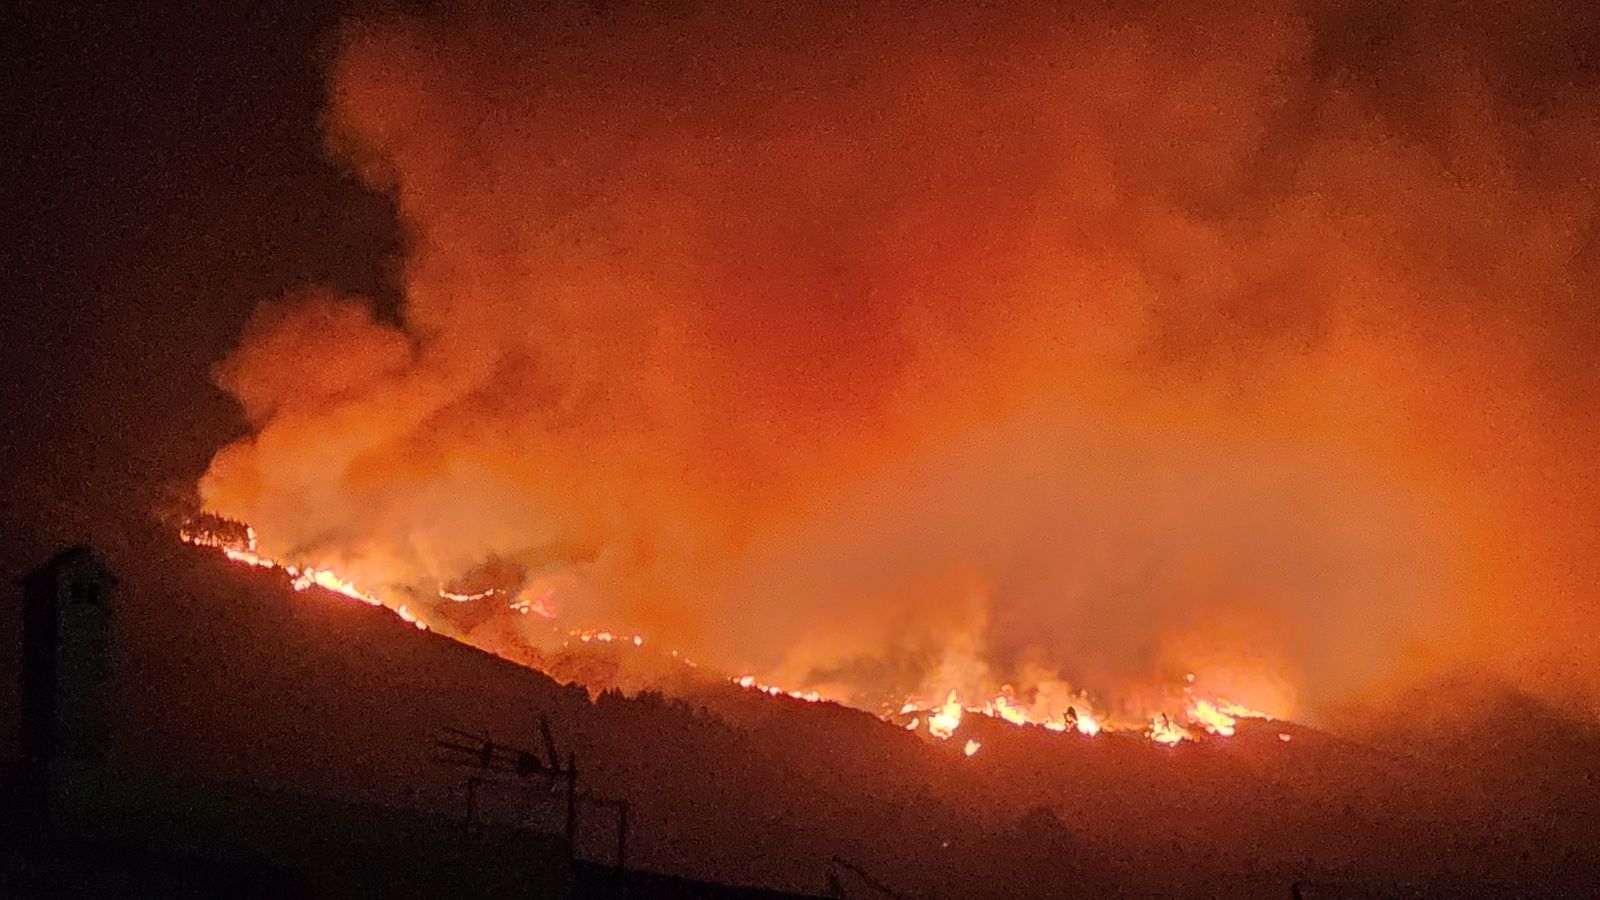 Incêndios florestais queimam em Tenerife, Canadá e Portugal em meio a alertas sobre ritmo ‘alarmante’ de mudanças climáticas |  Noticias do mundo